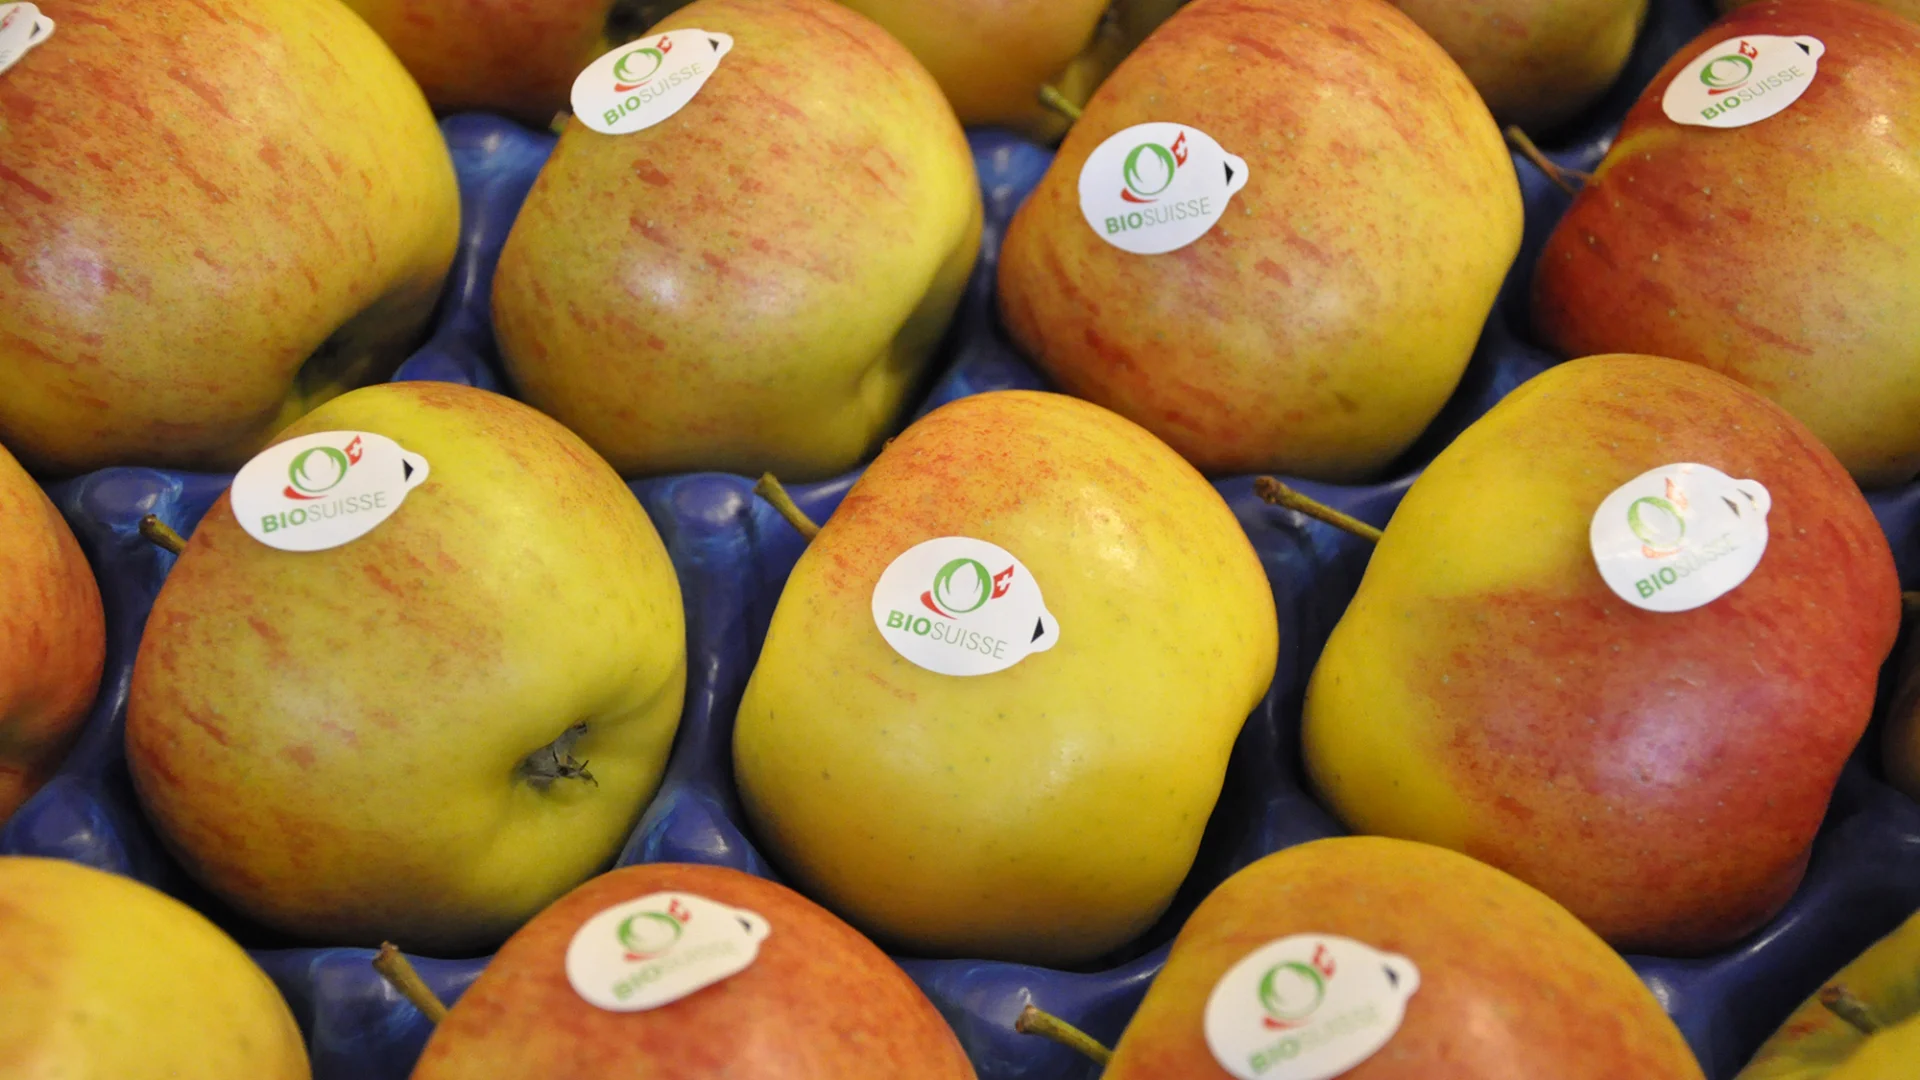 Äpfel mit dem Knospe-Label von Bio Suisse, das zu den weltweit höchsten Bio-Standards gehört.